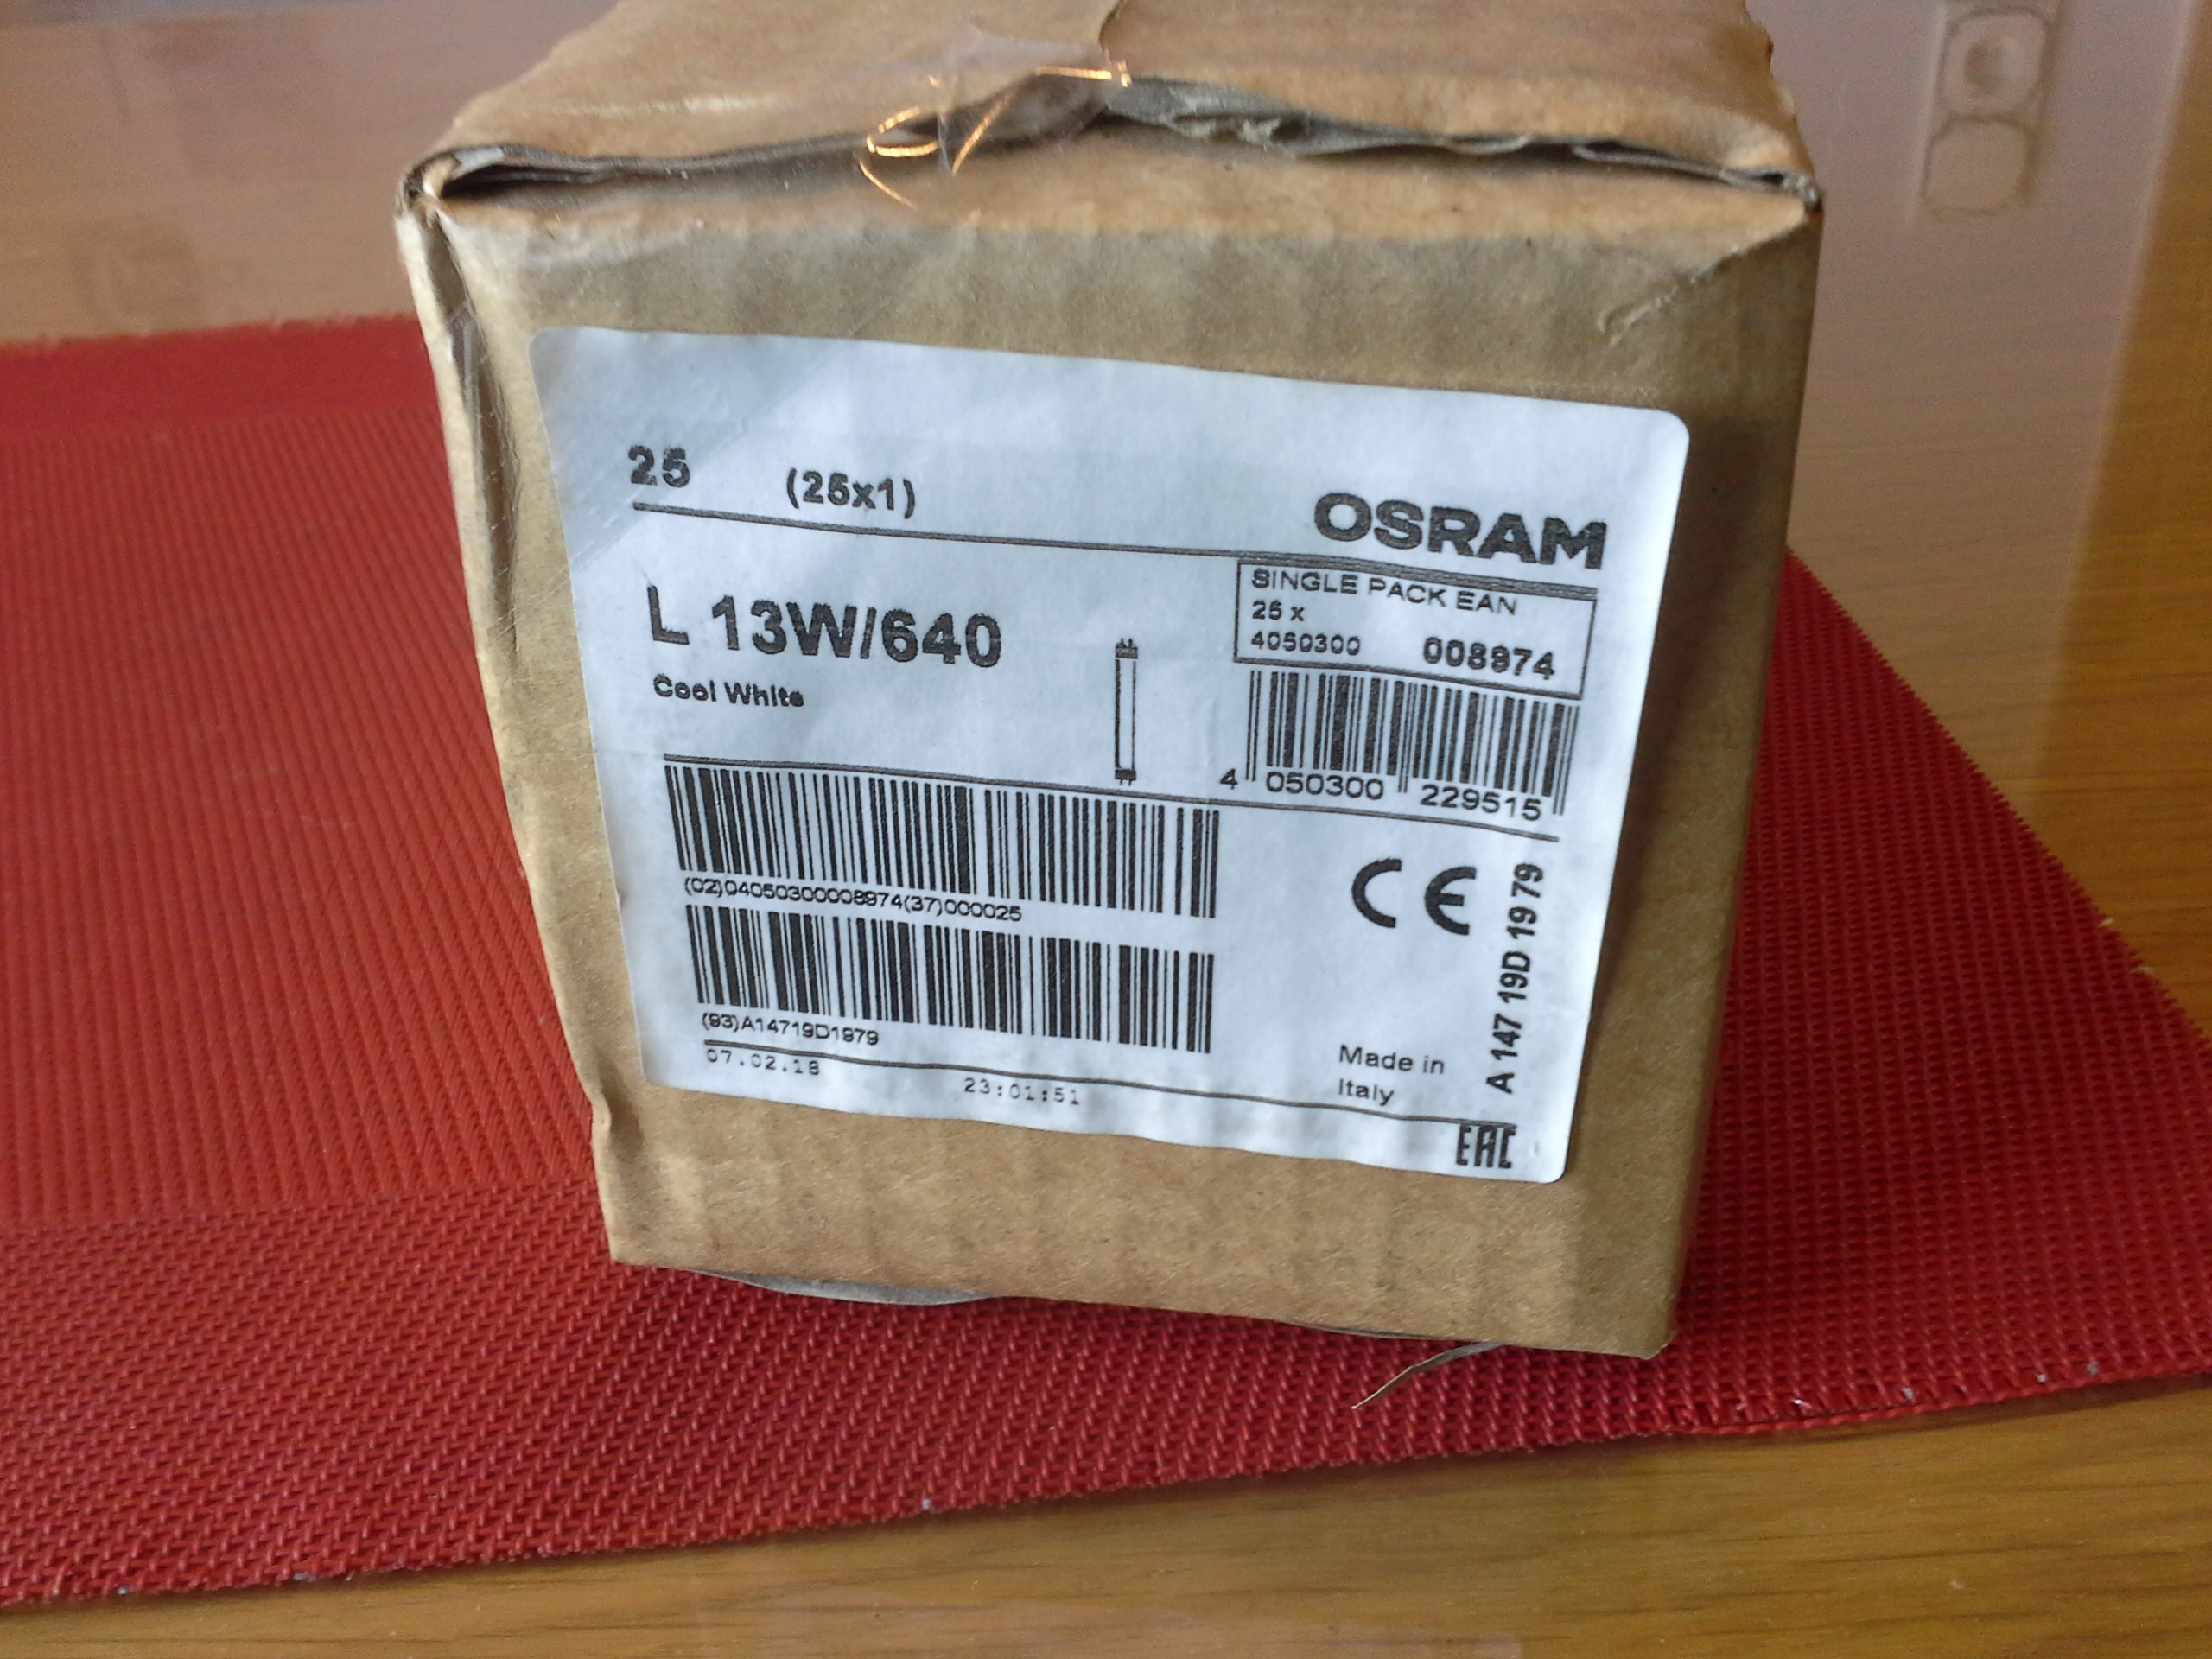 Leuchtstoffröhre, Osram L13W/640, 25er Pack